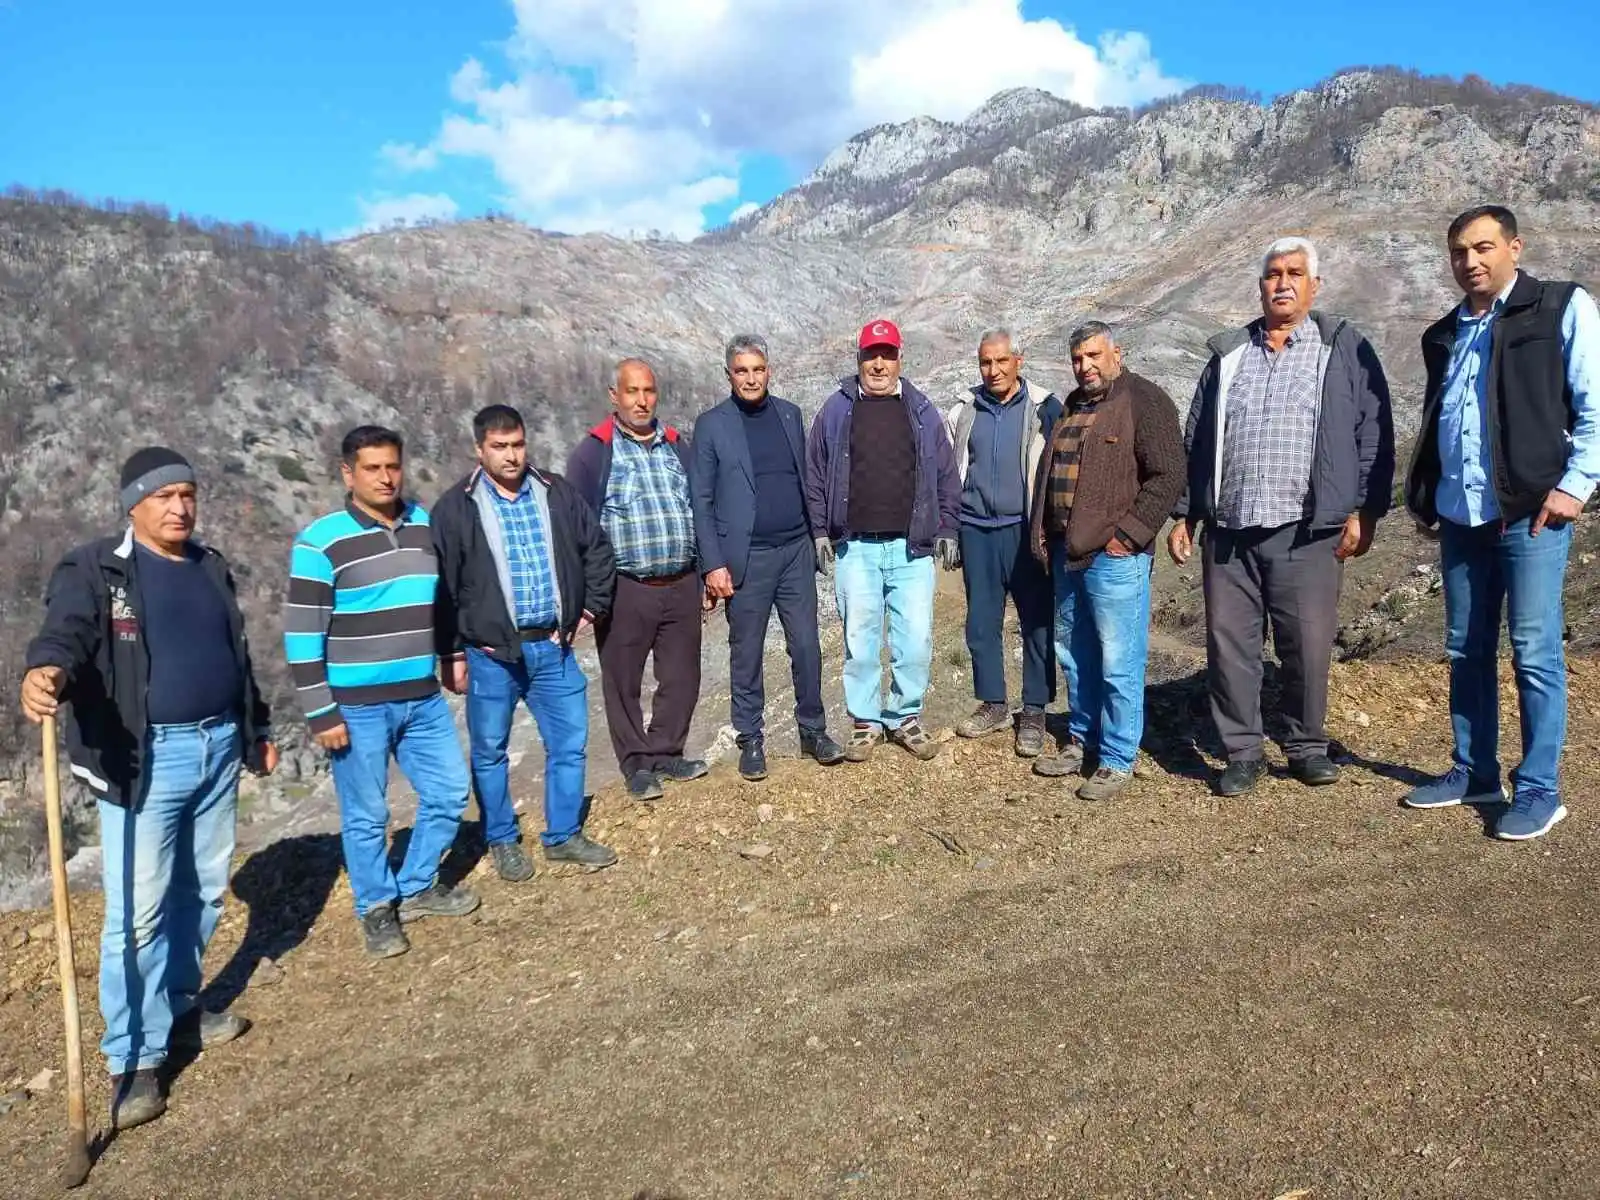 MHP Köyceğiz İlçe Teşkilatı Kızılçam Tohumu ekim faaliyetine katıldı
